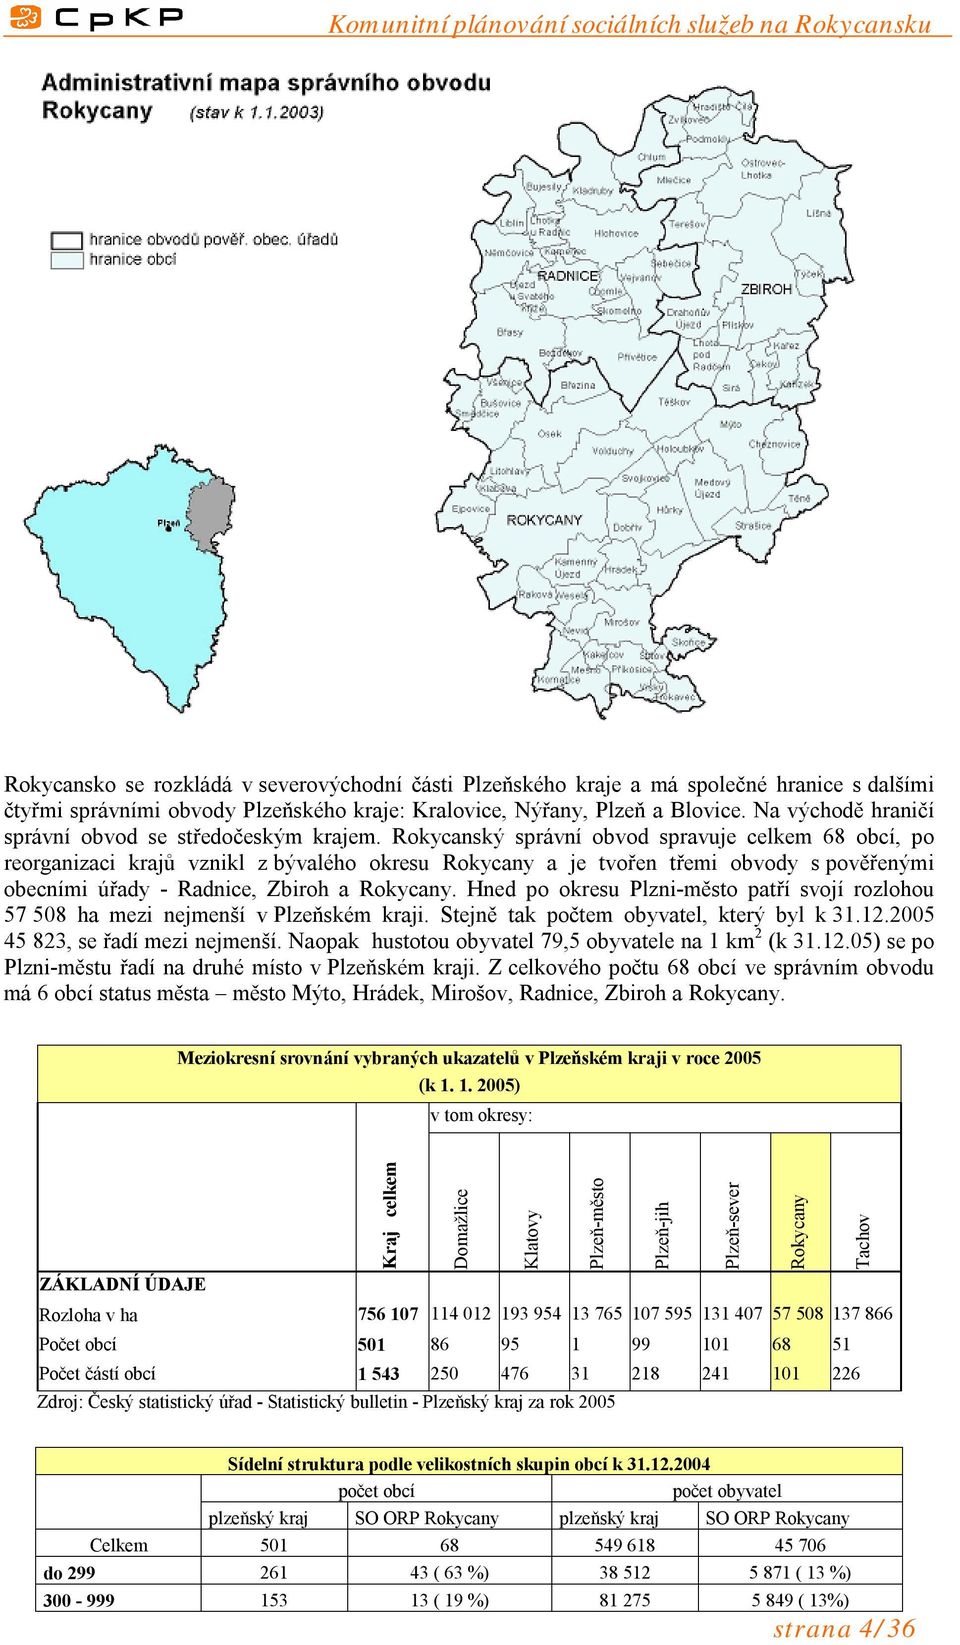 Rokycanský správní obvod spravuje celkem 68 obcí, po reorganizaci krajů vznikl z bývalého okresu Rokycany a je tvořen třemi obvody s pověřenými obecními úřady - Radnice, Zbiroh a Rokycany.